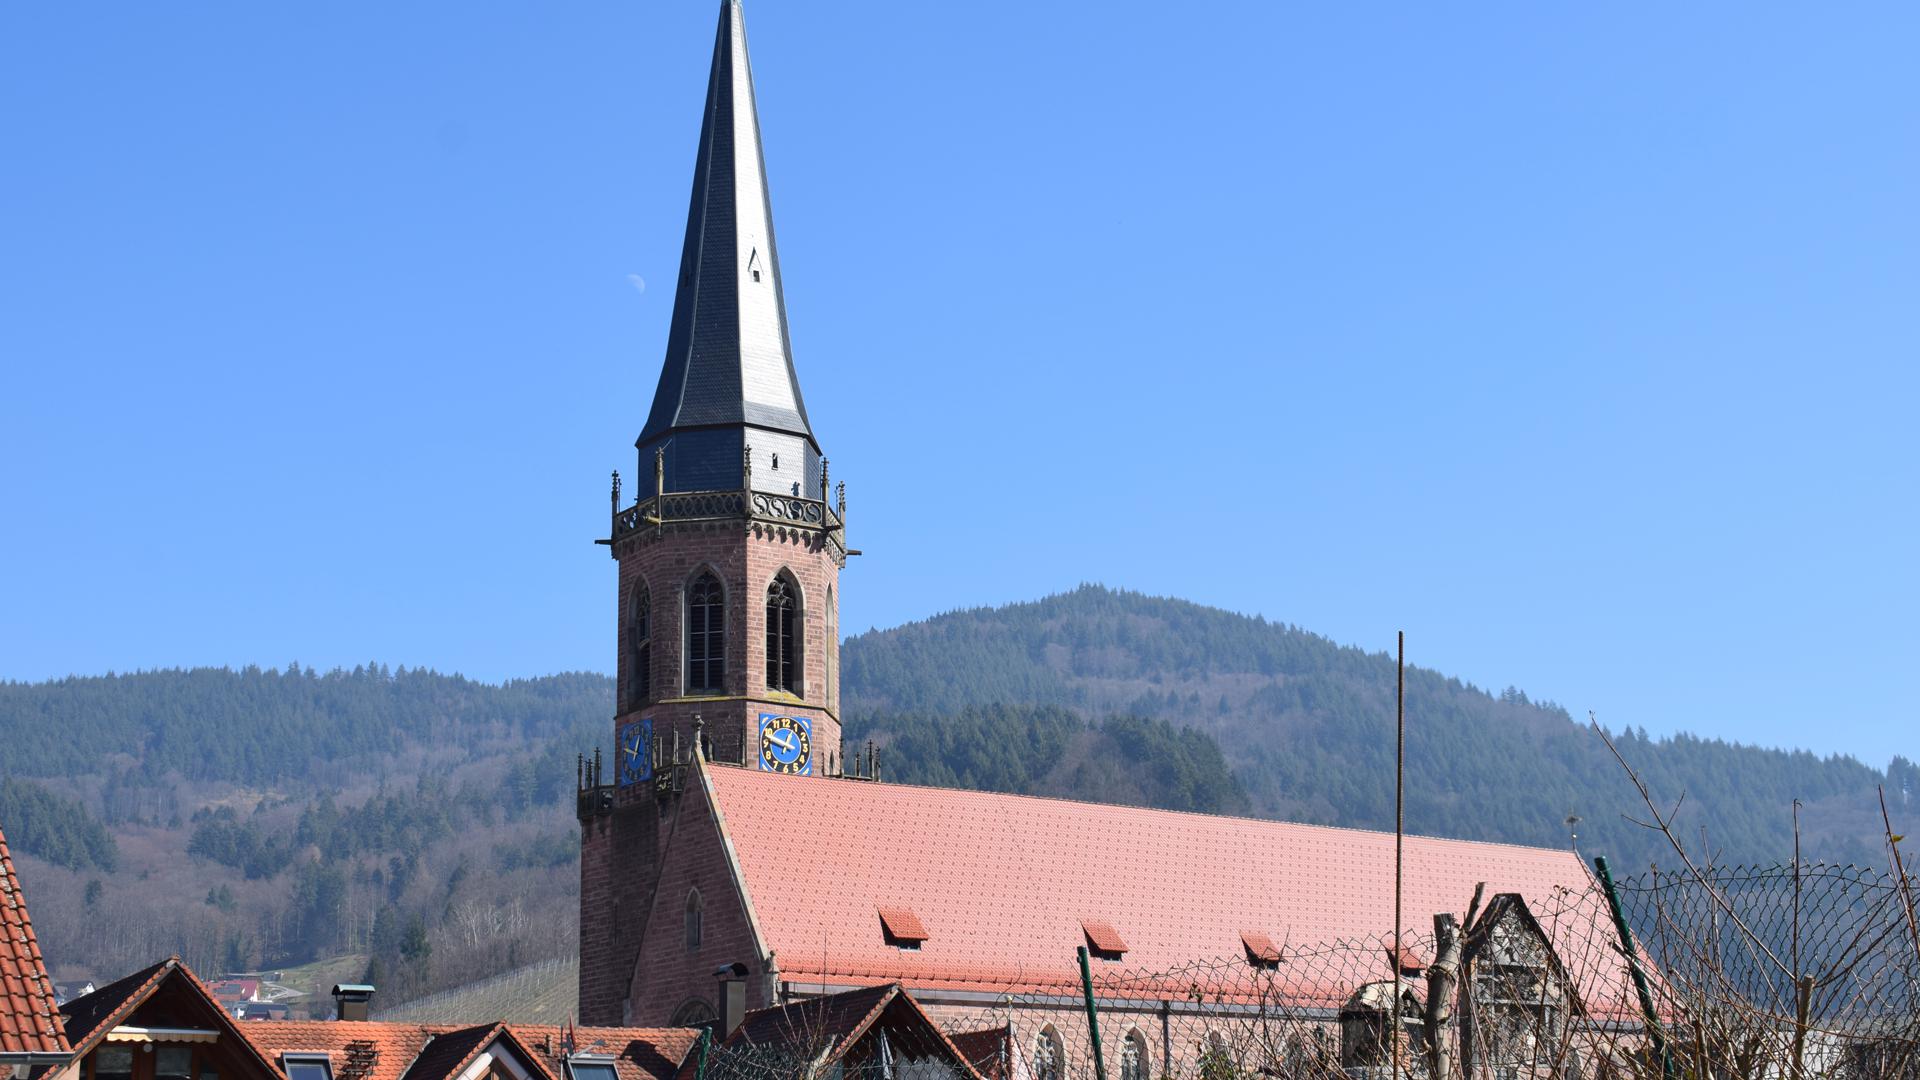 Pfarrkirche St. Nikolaus in Kappelrodeck vor Bergen und blauem Himmel.